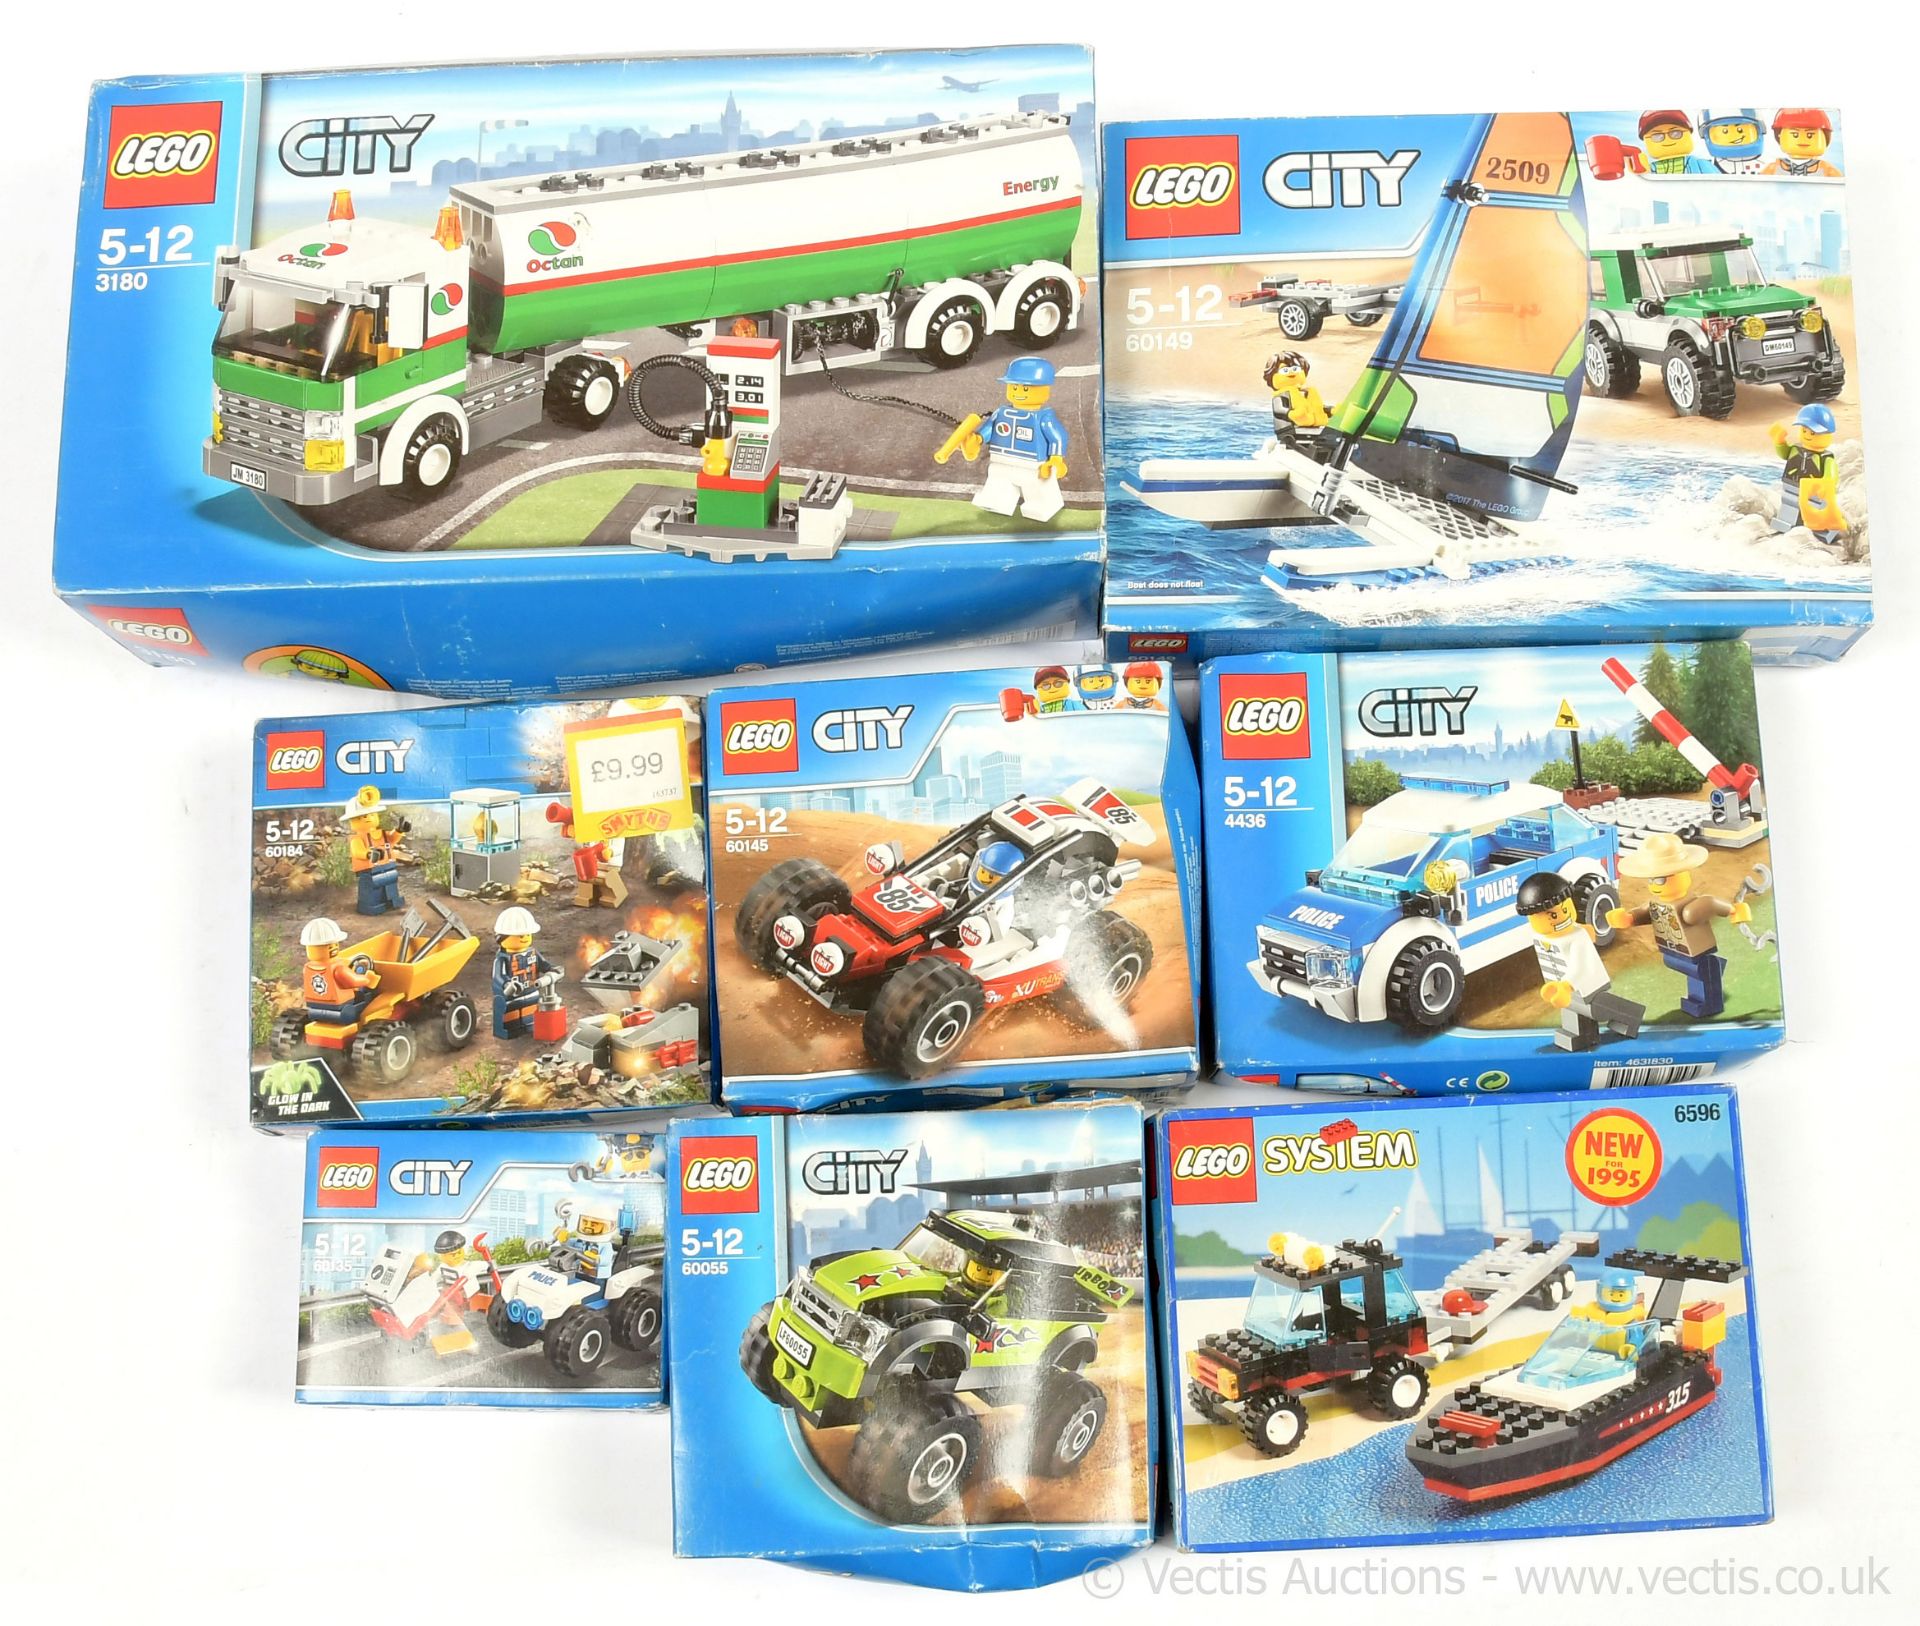 Lego City sets, 3180 Octan Fuel Tanker, 60149